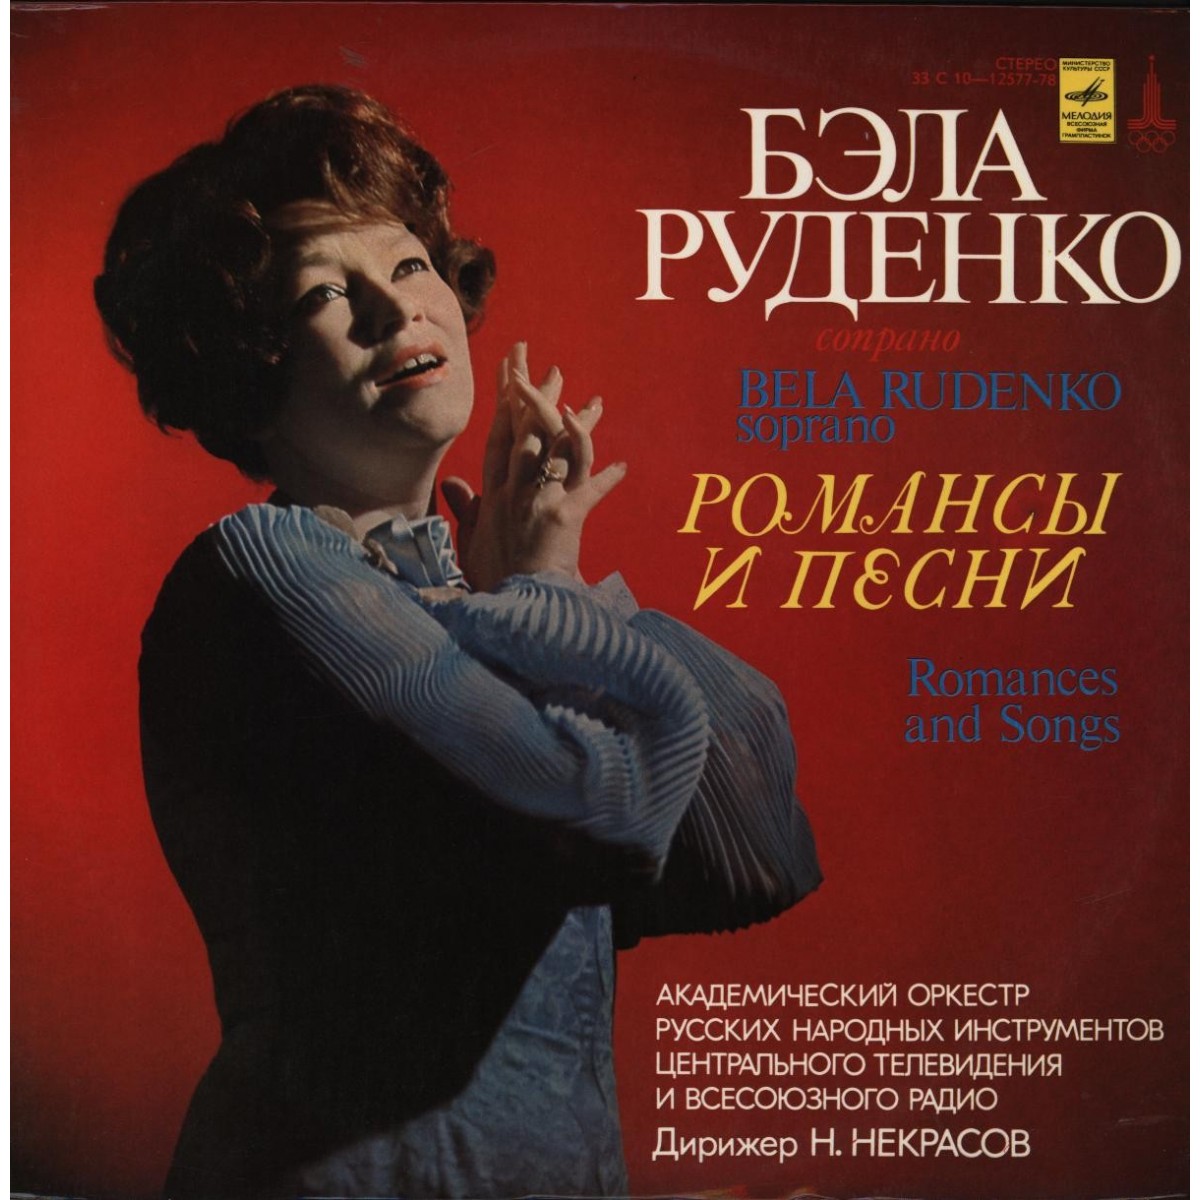 Бэла Руденко (сопрано) - Романсы и песни